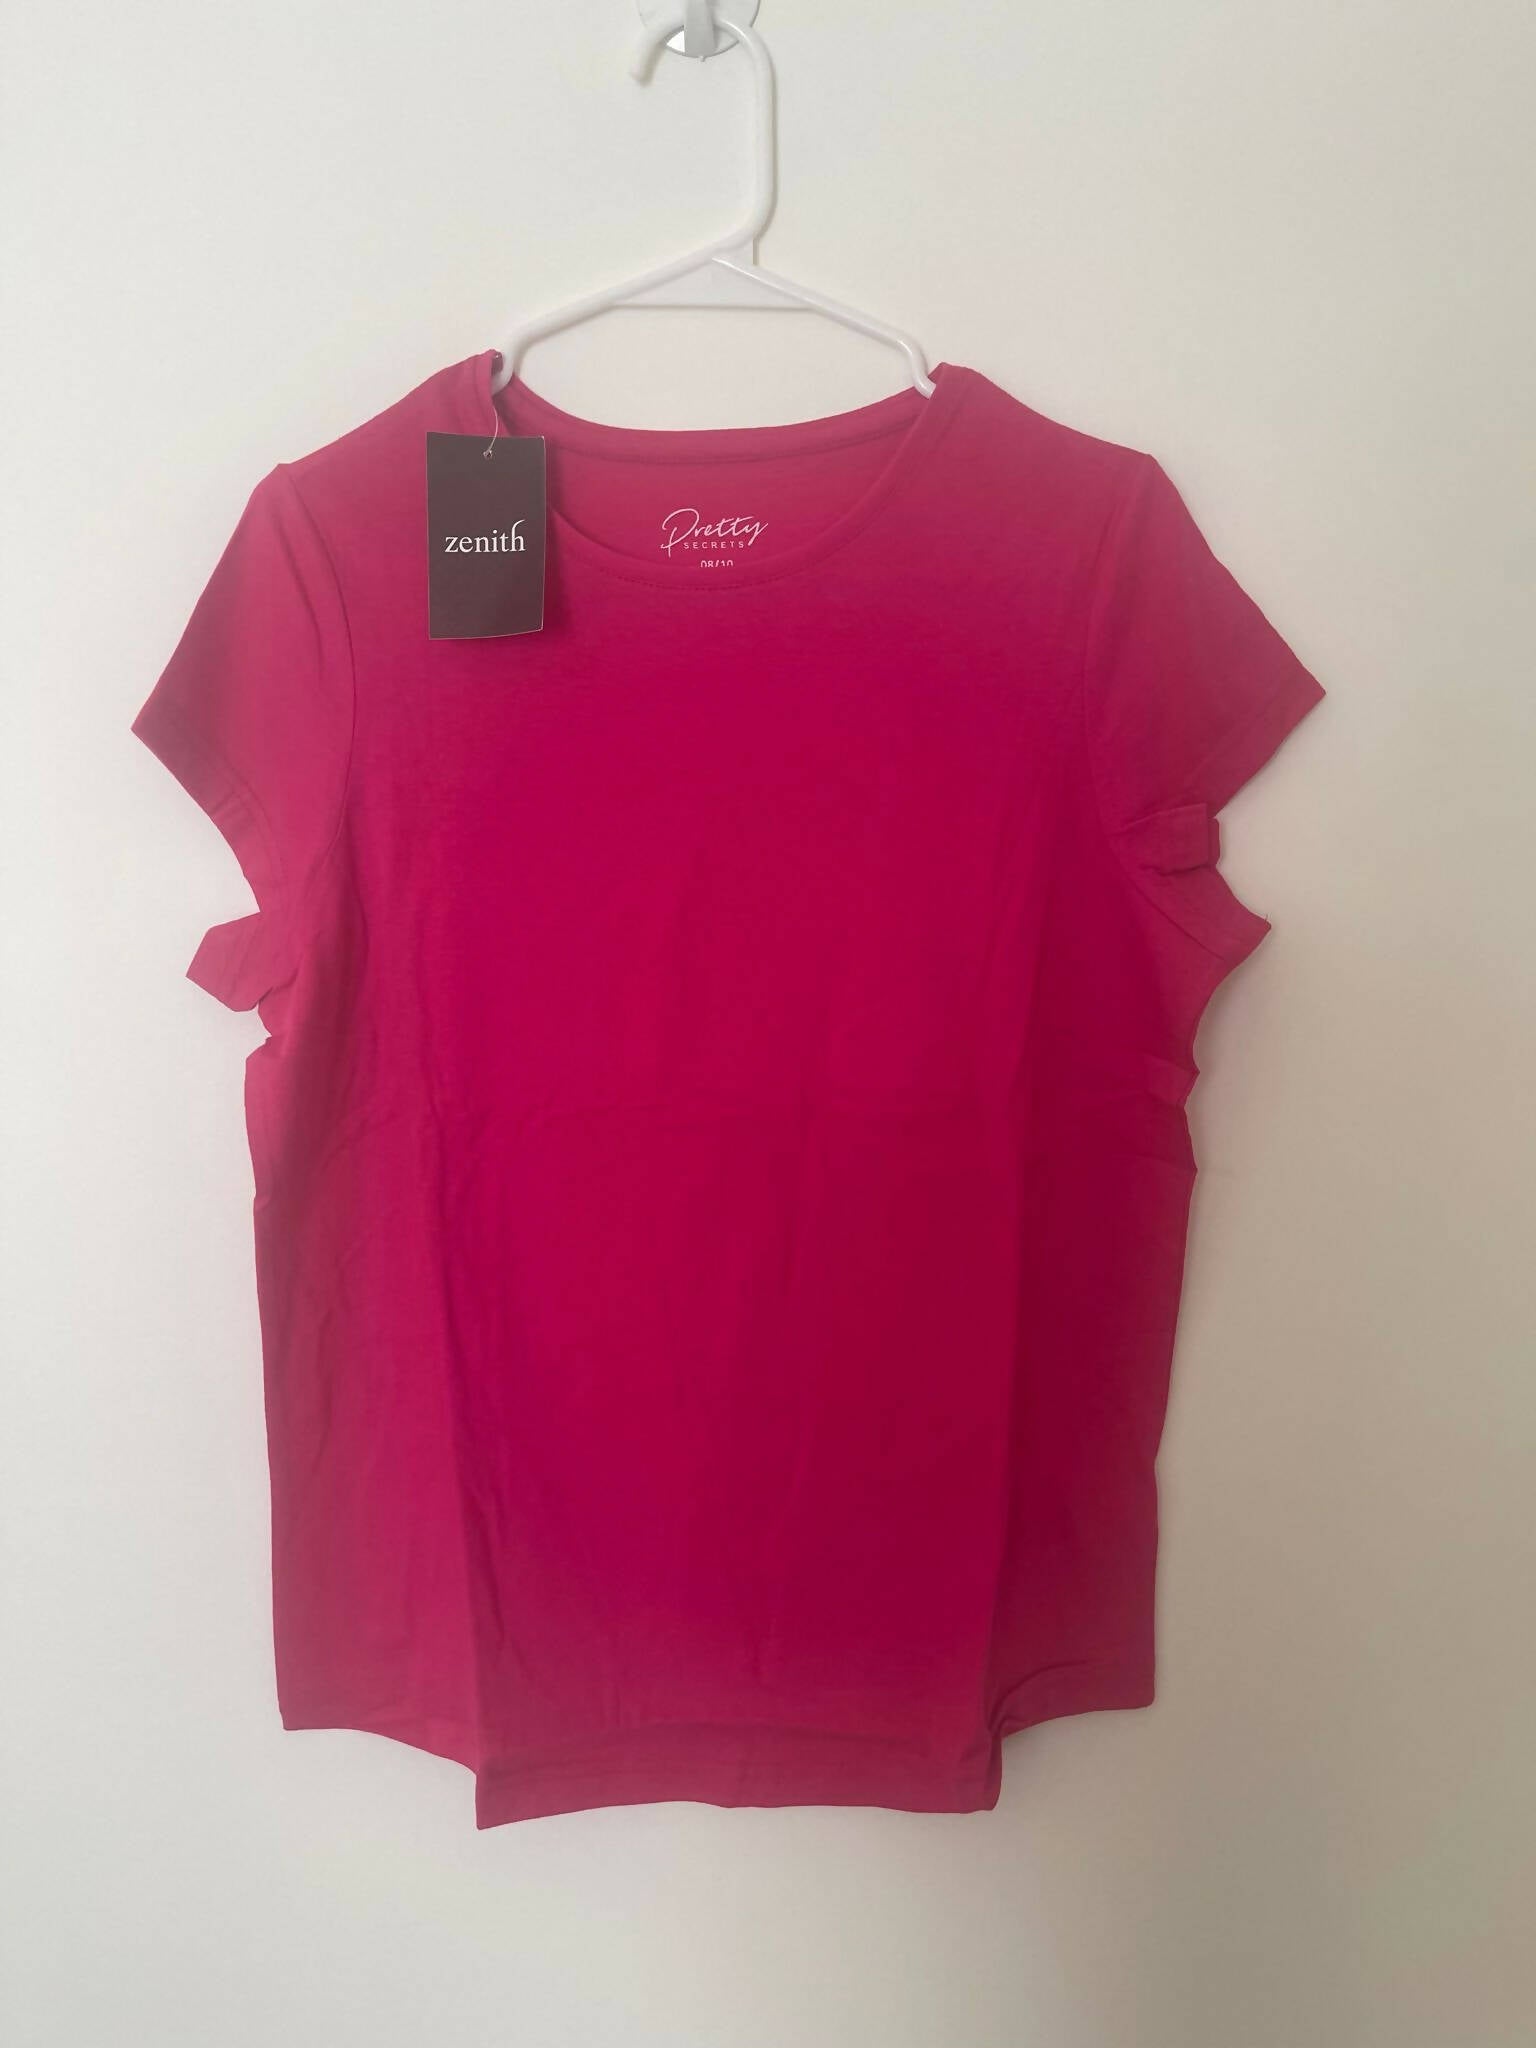 Zenith | Pink PJ set (Size: small, 8/10) | Women Loungewear & Sleepwear | Brand New